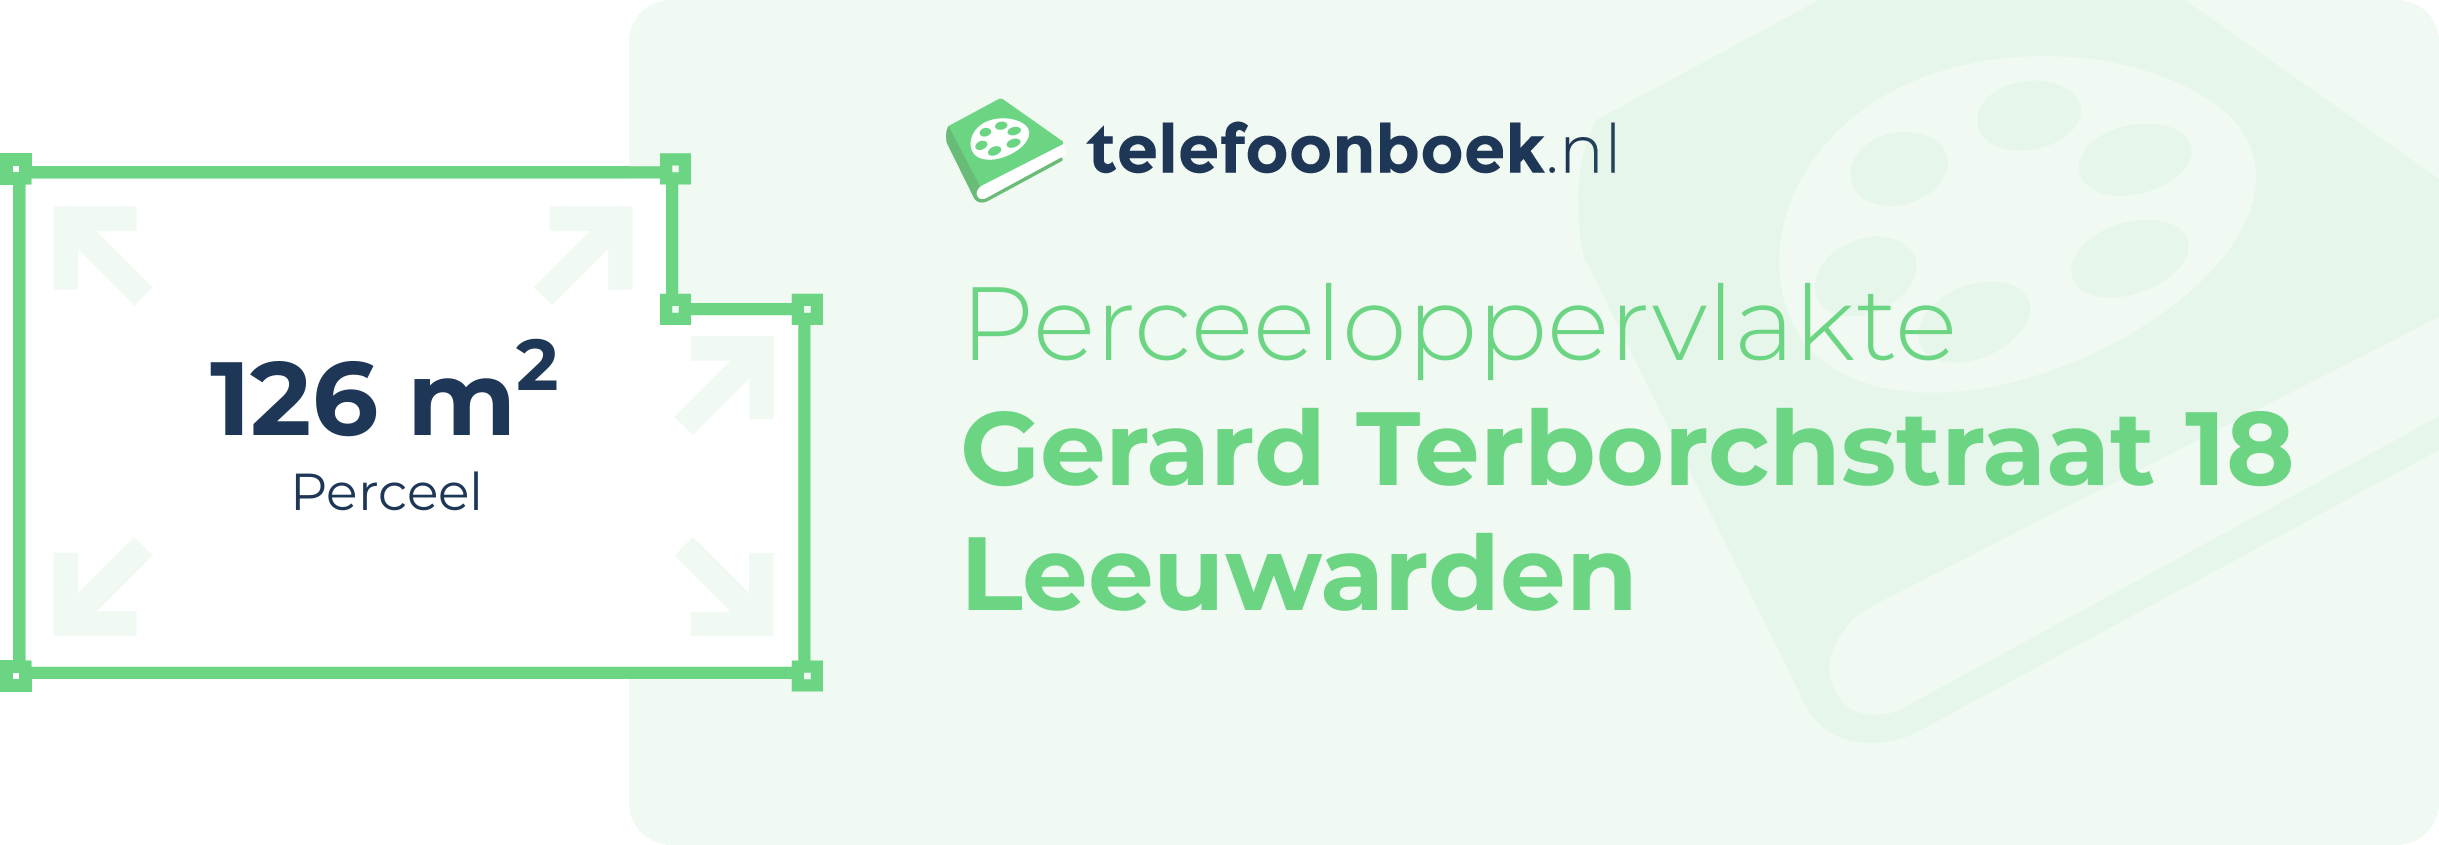 Perceeloppervlakte Gerard Terborchstraat 18 Leeuwarden